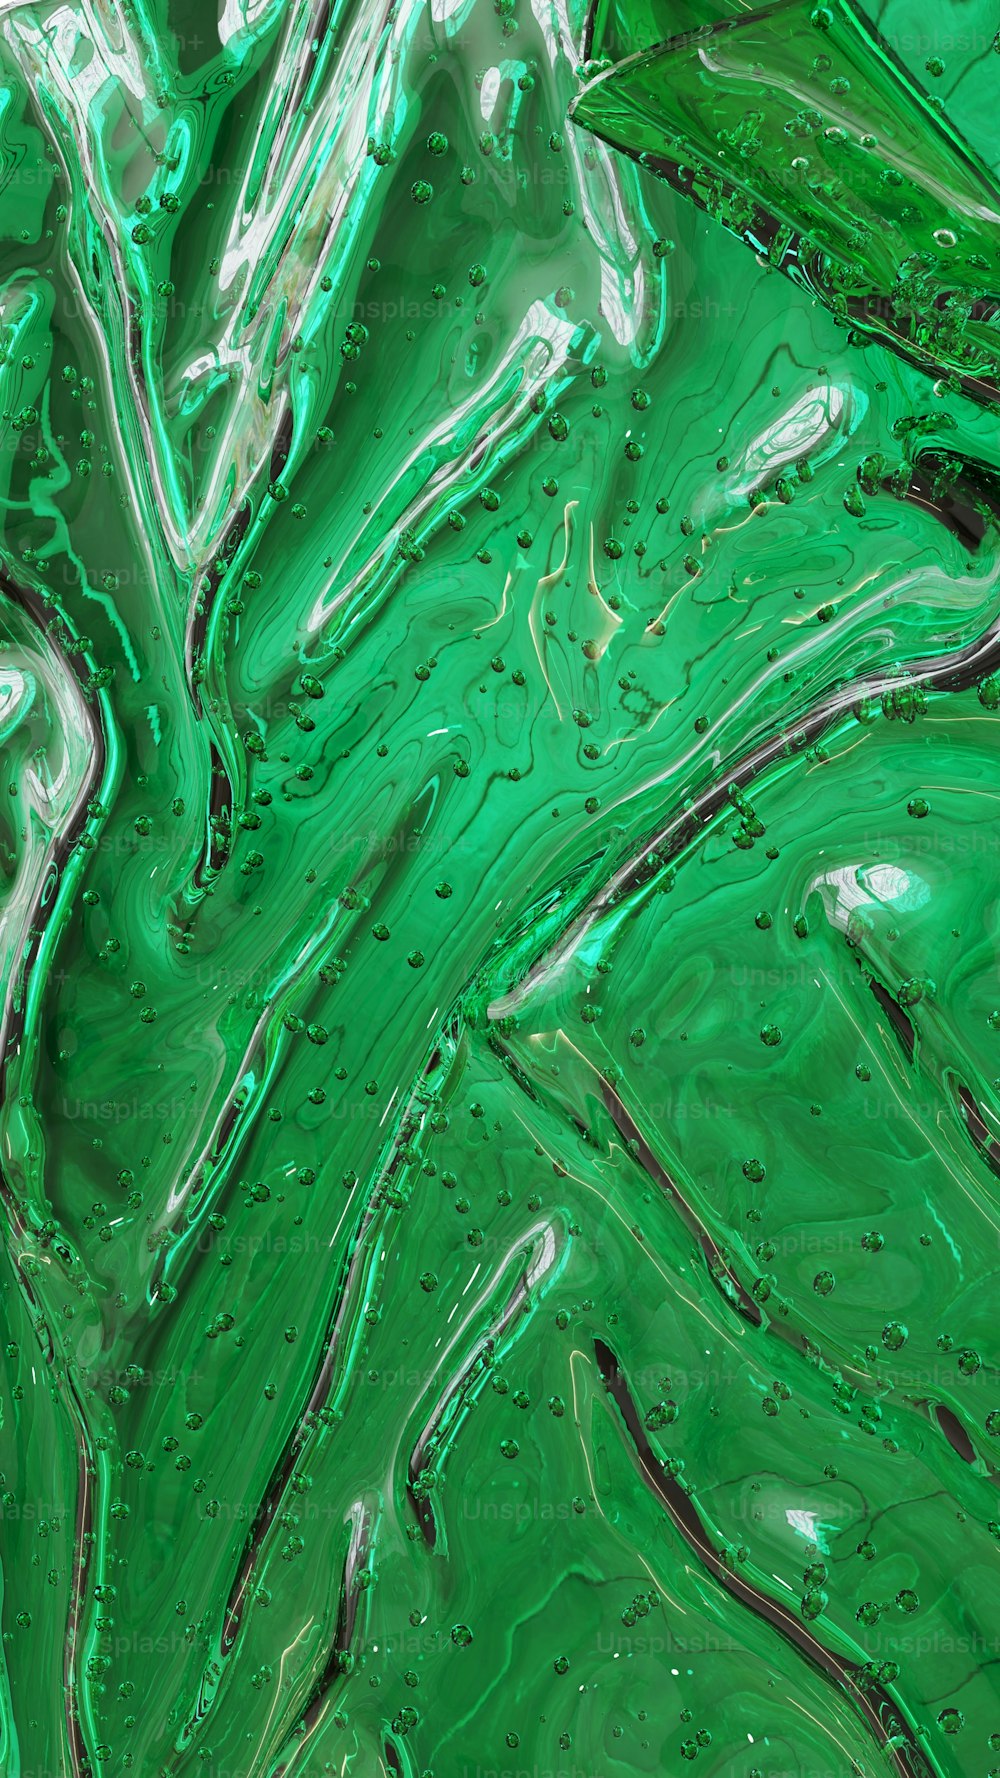 Un primer plano de una textura líquida verde